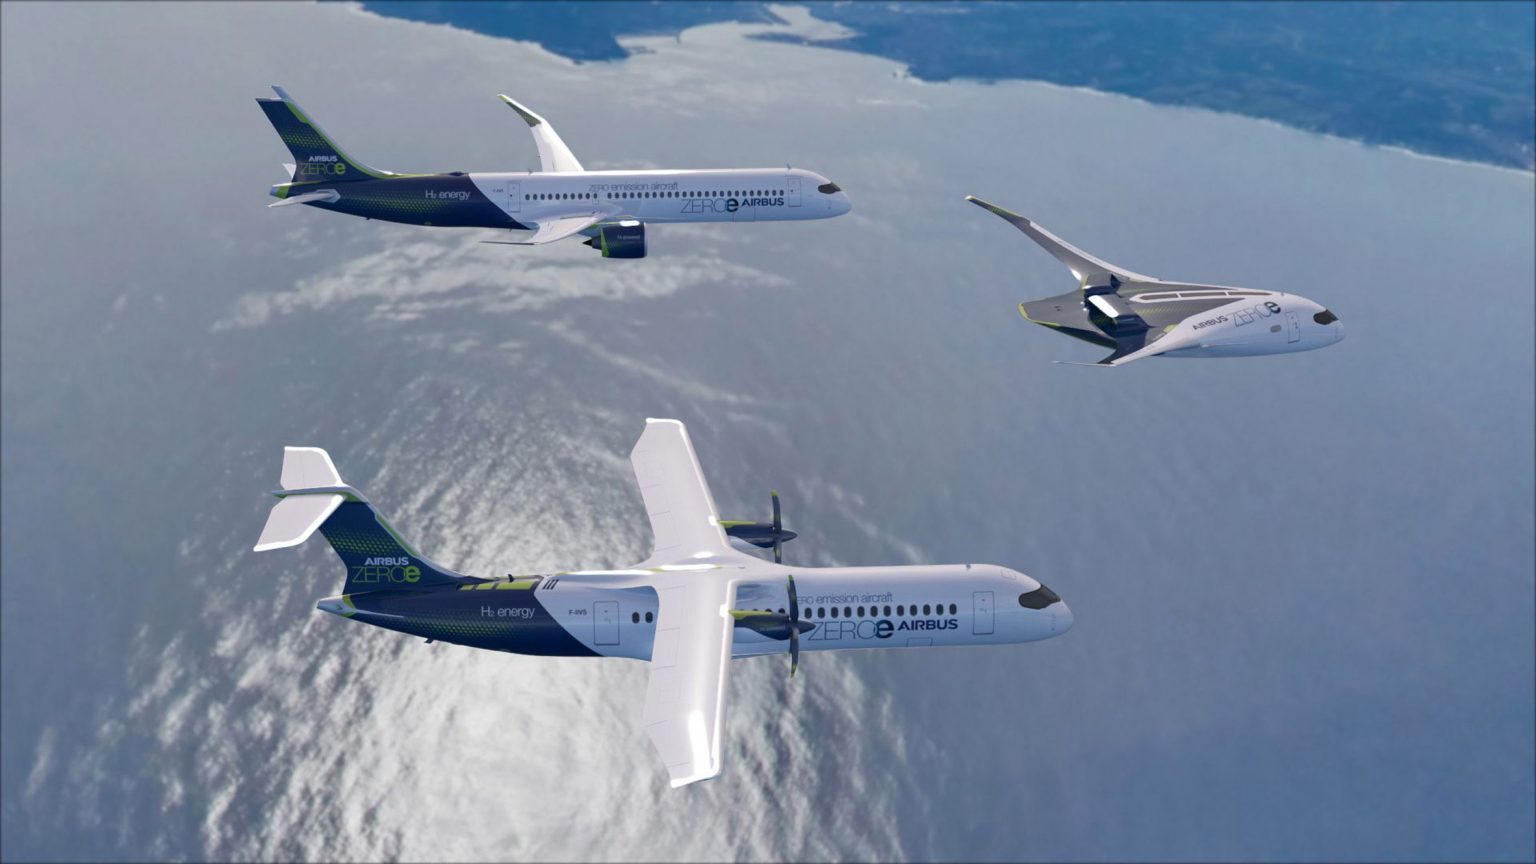 Se anuncian nuevos aviones comerciales propulsados por hidrógeno.